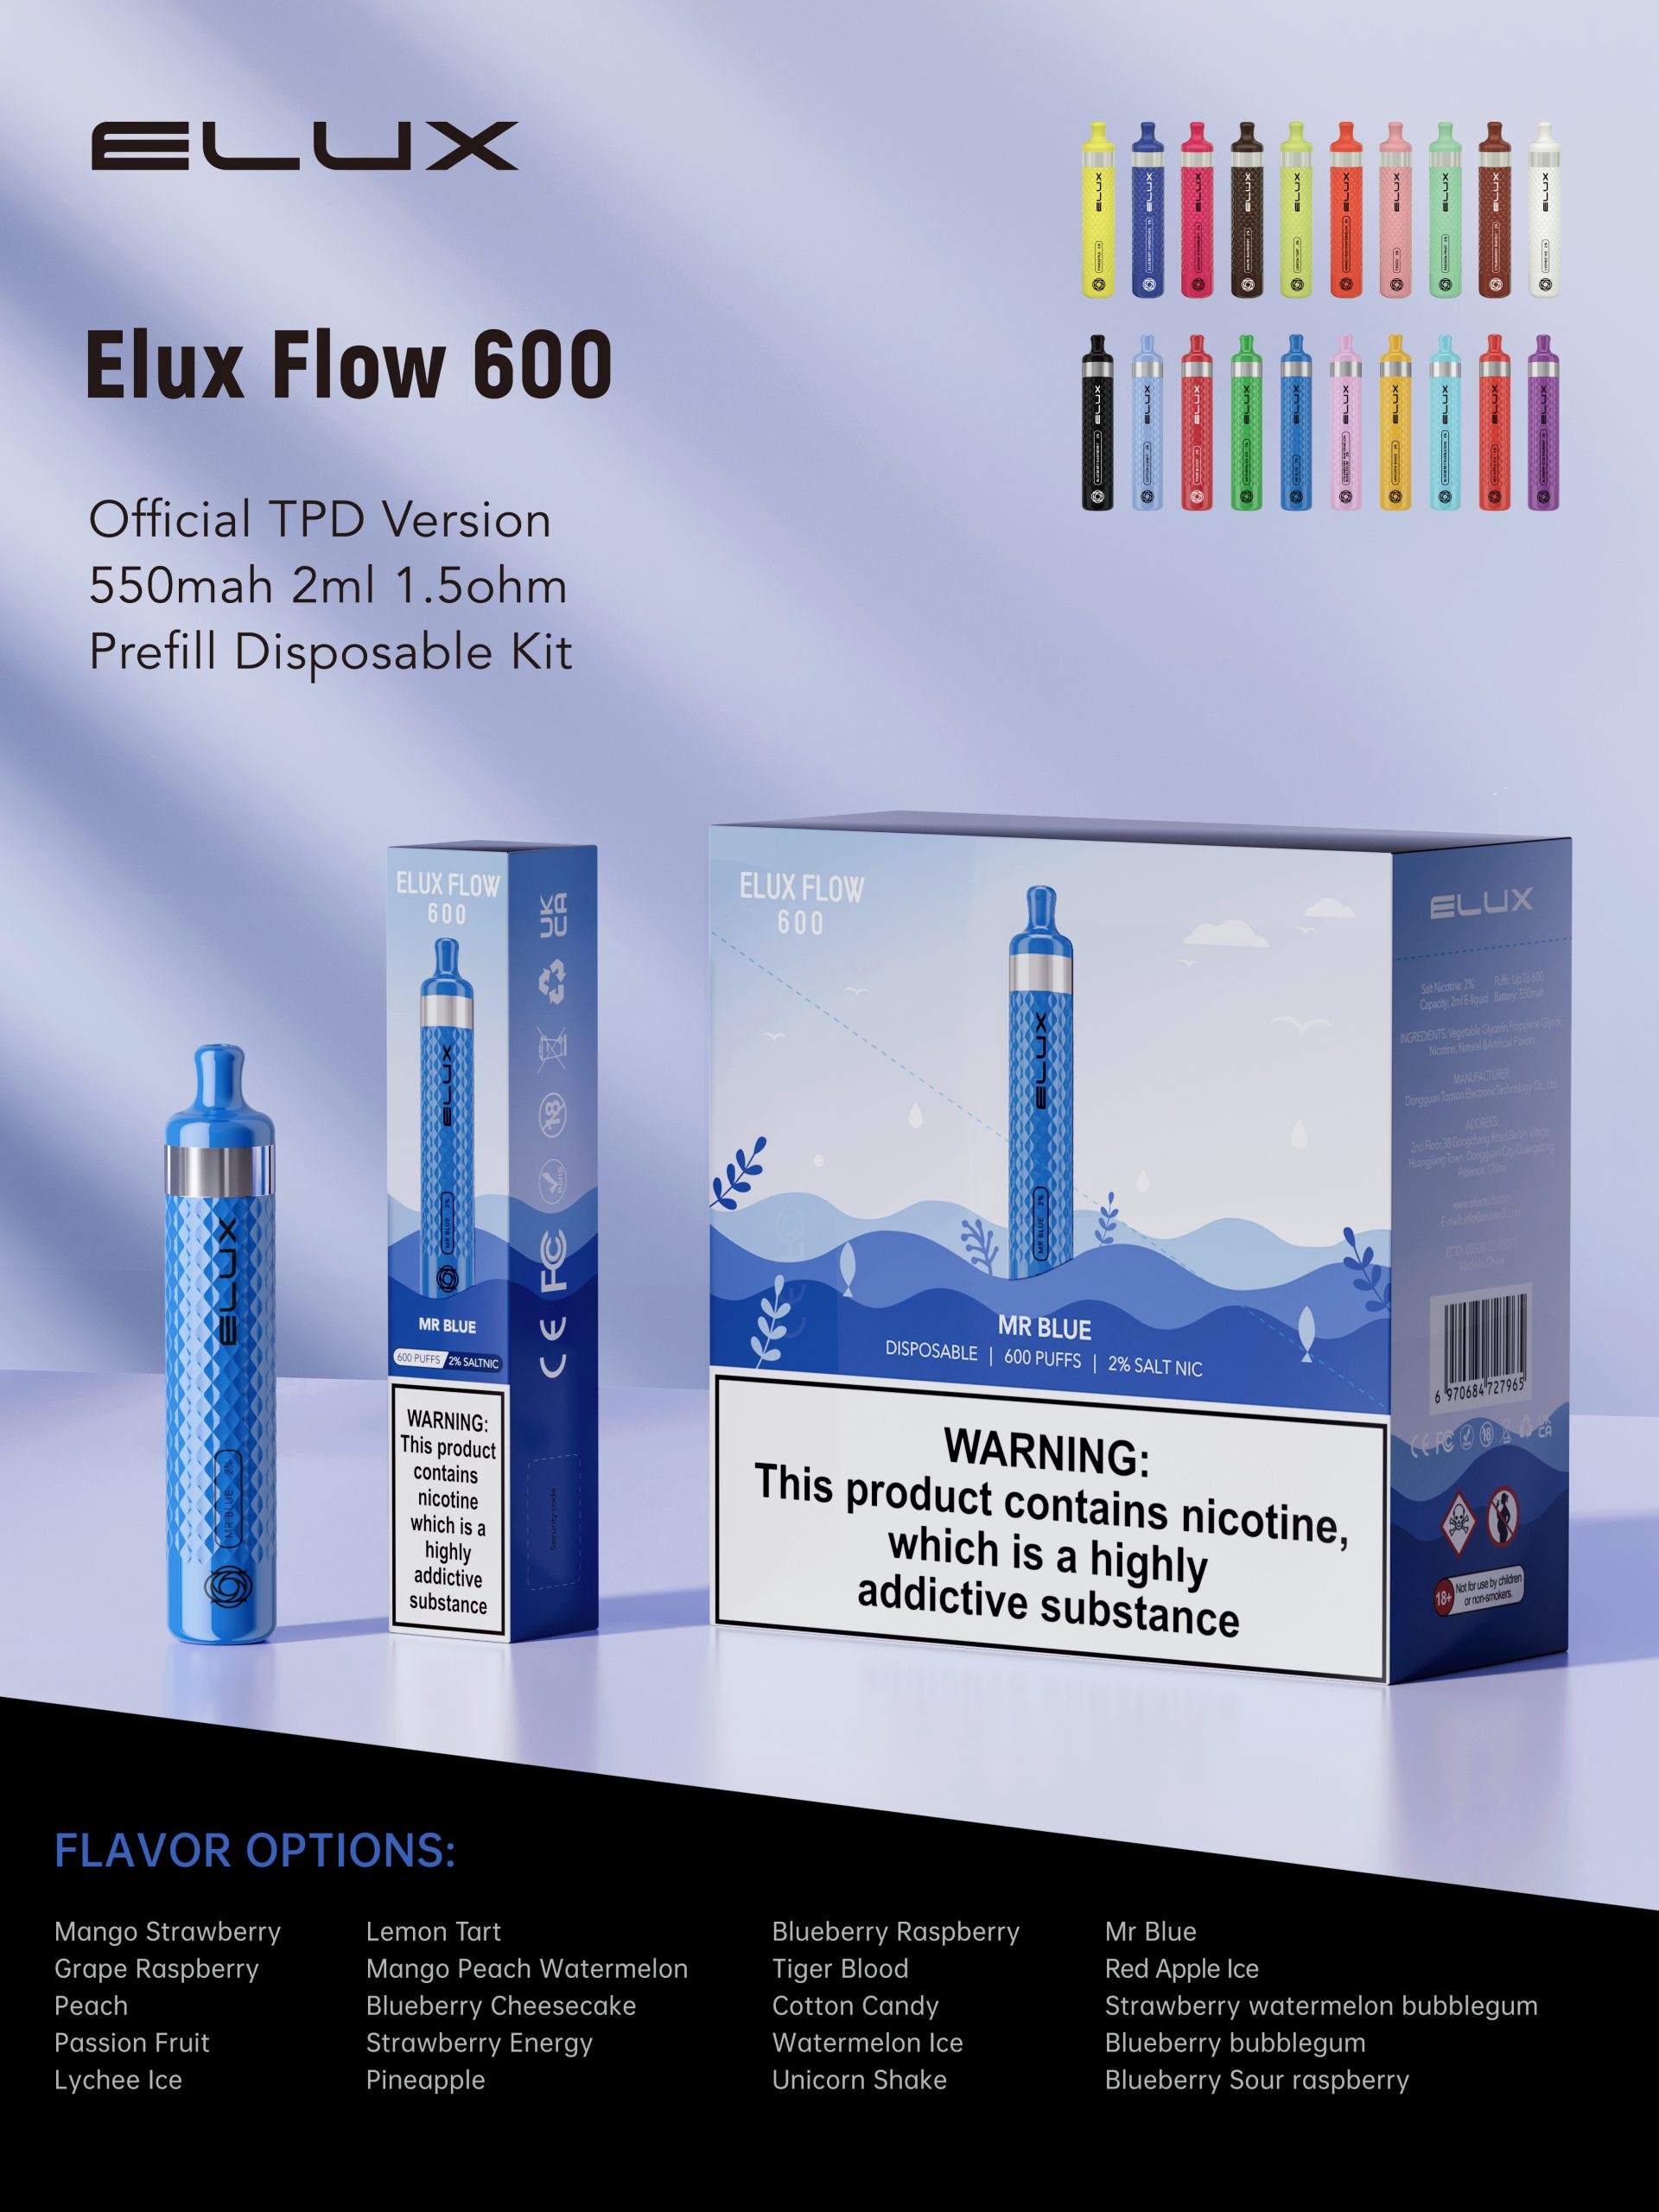 Elux Flow 600 disposable vape